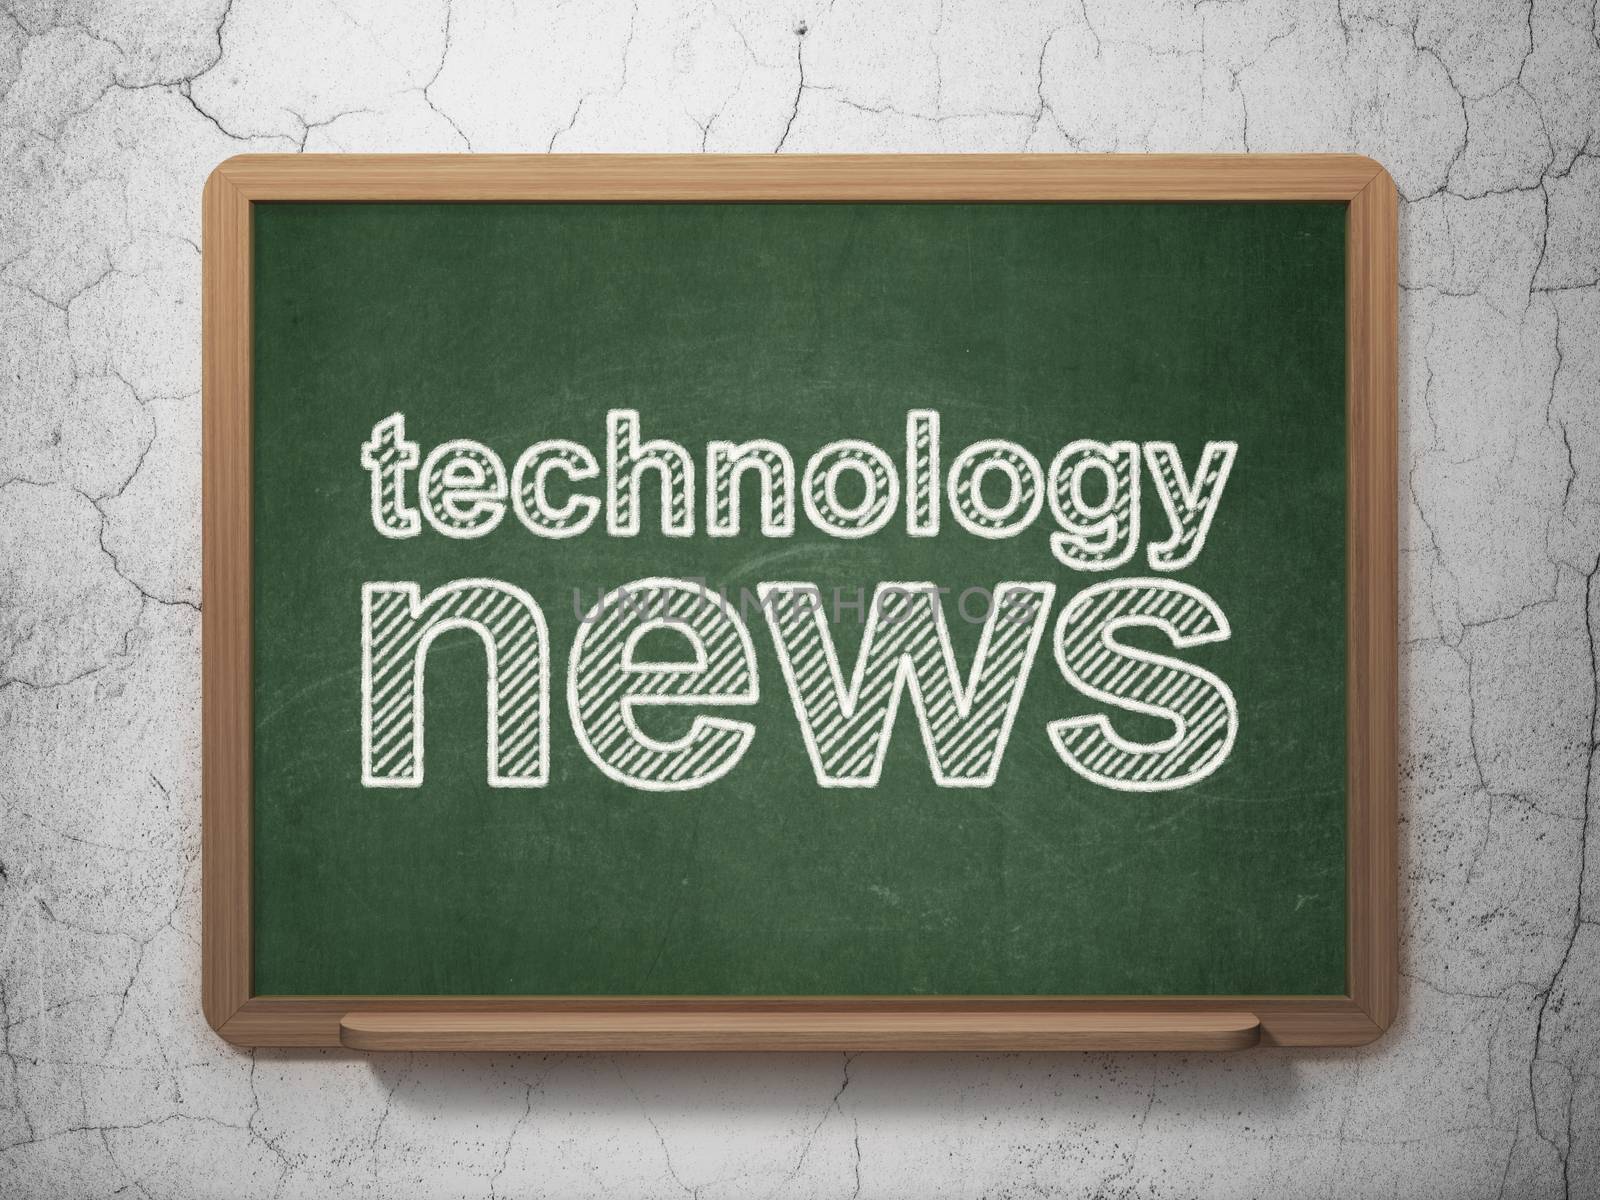 News concept: Technology News on chalkboard background by maxkabakov